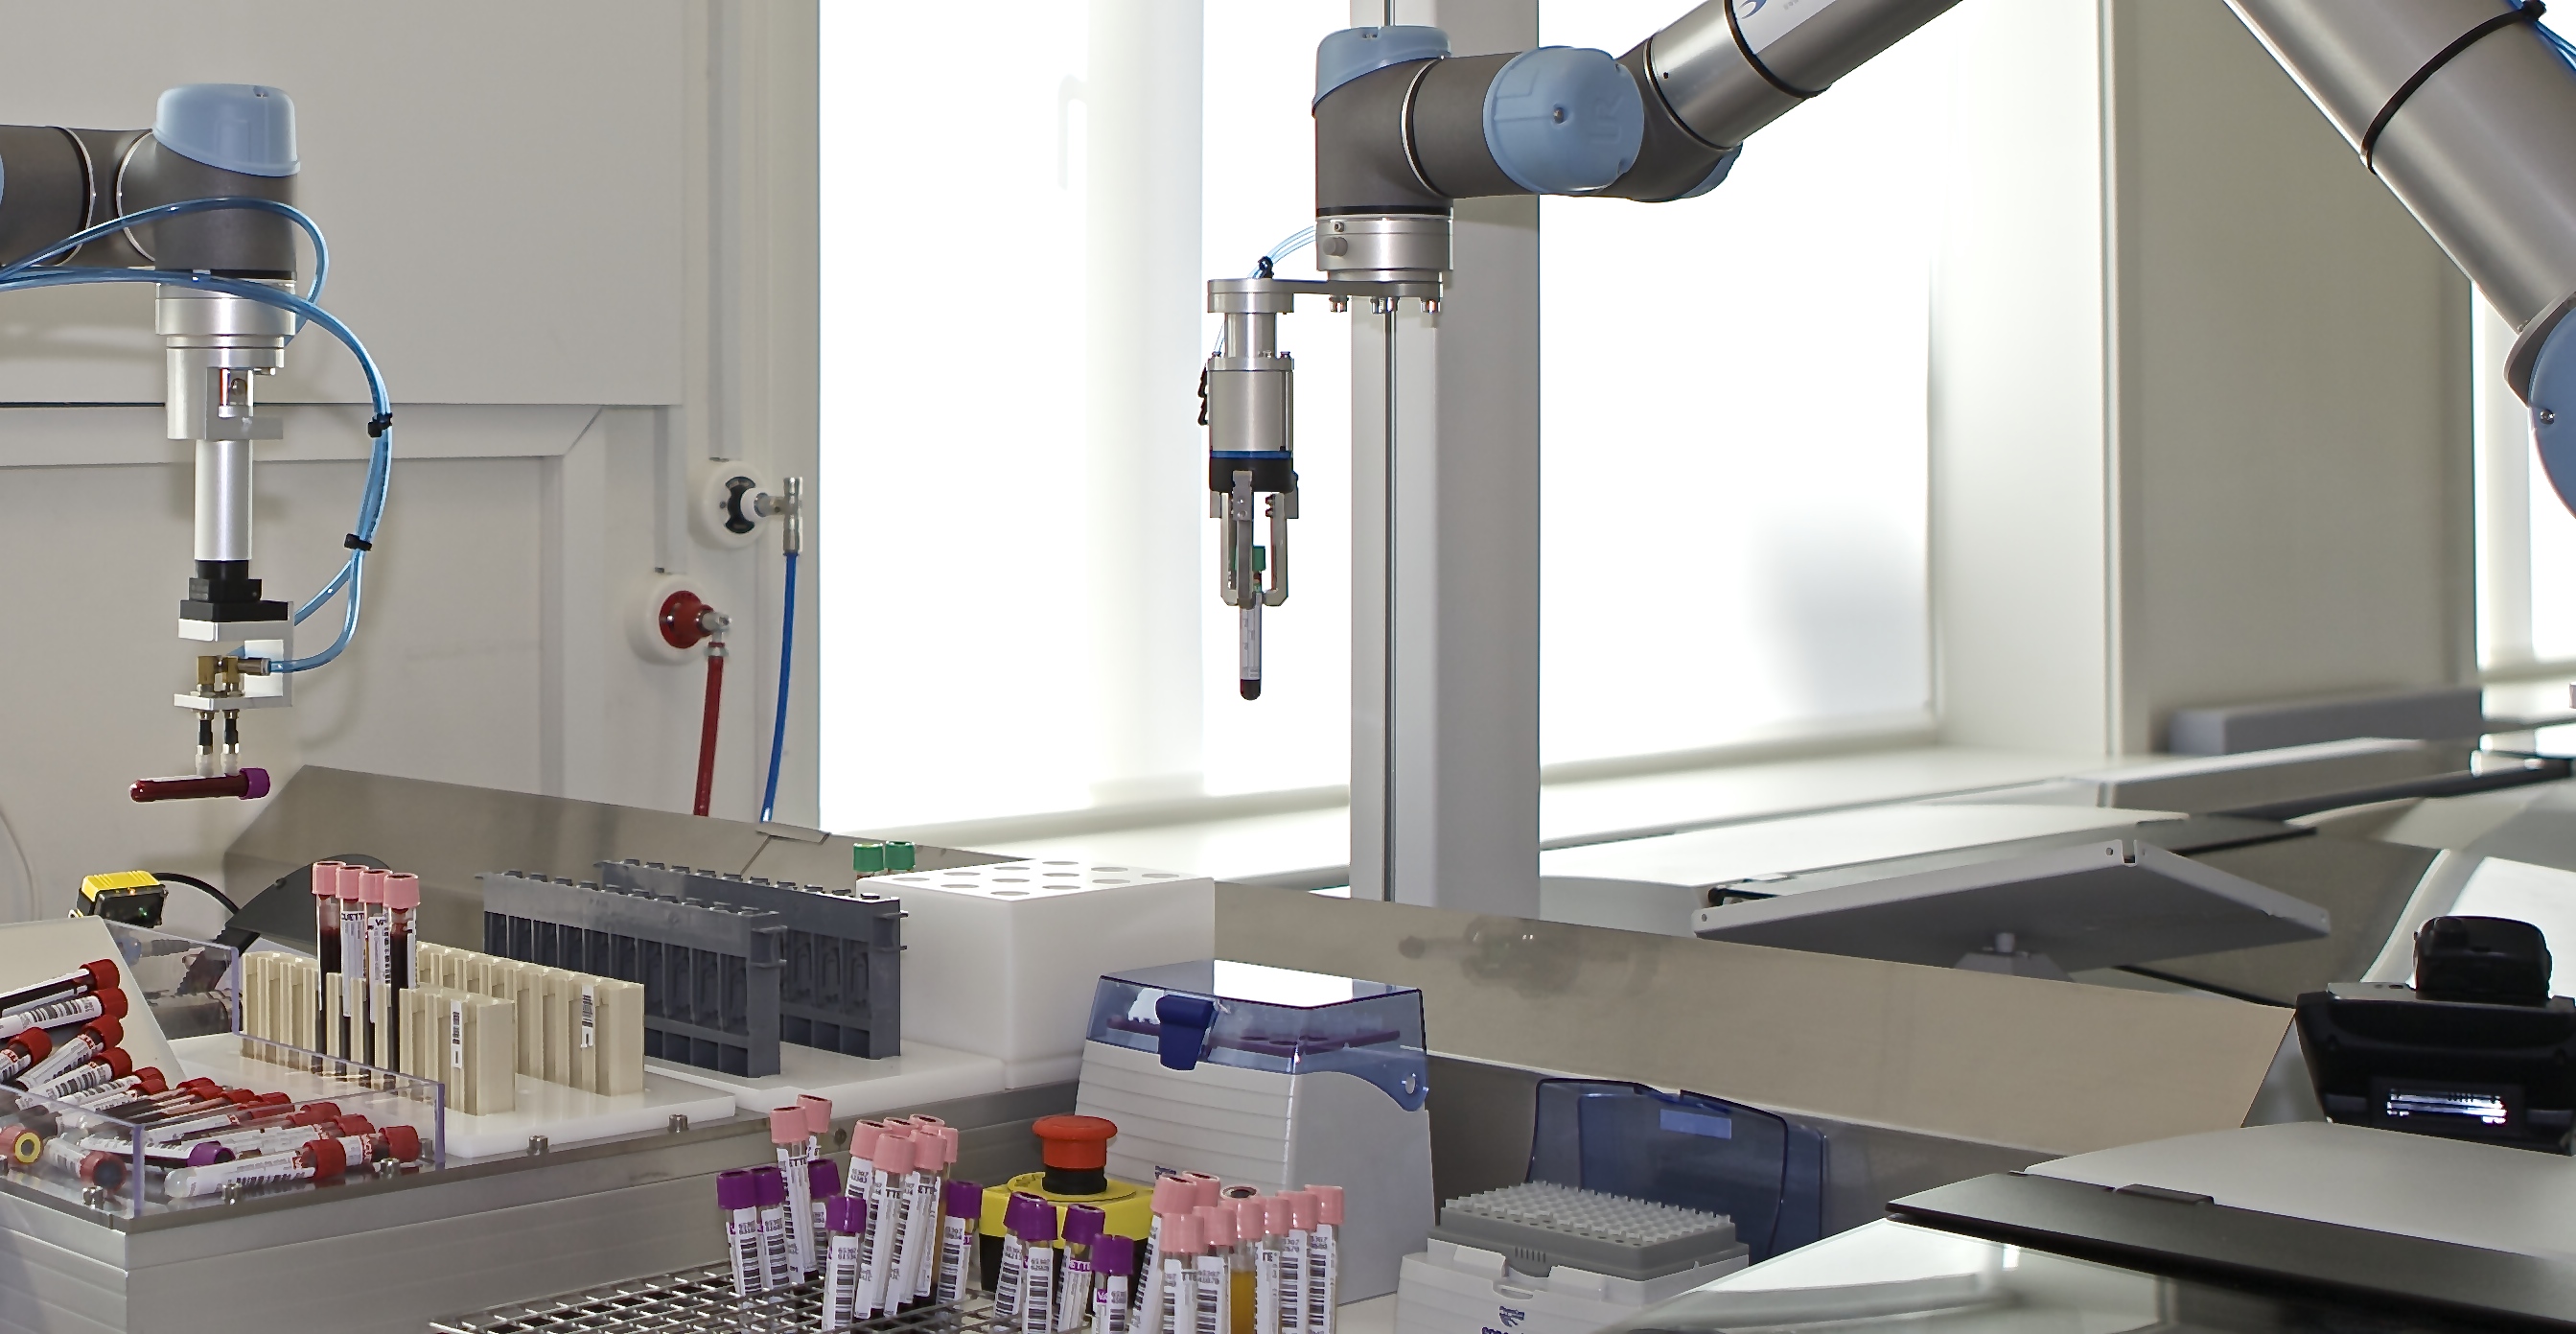 UR5_robot handling blood samples_1